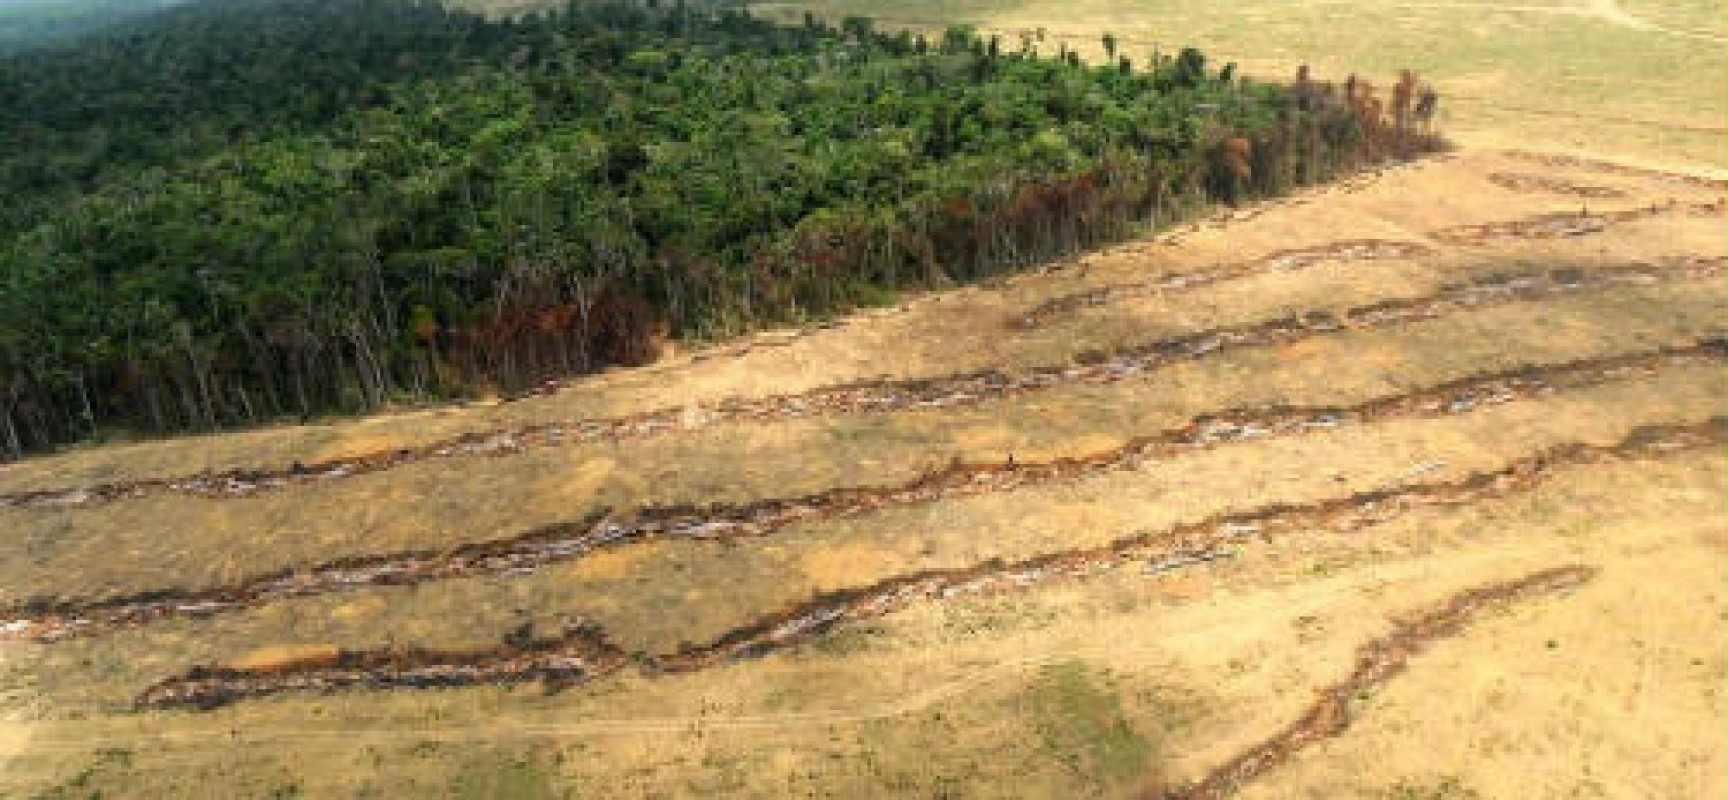 Imazon detectou, em outubro de 2014, um aumento do desmatamento na Amazônia de 467% em relação a 2013